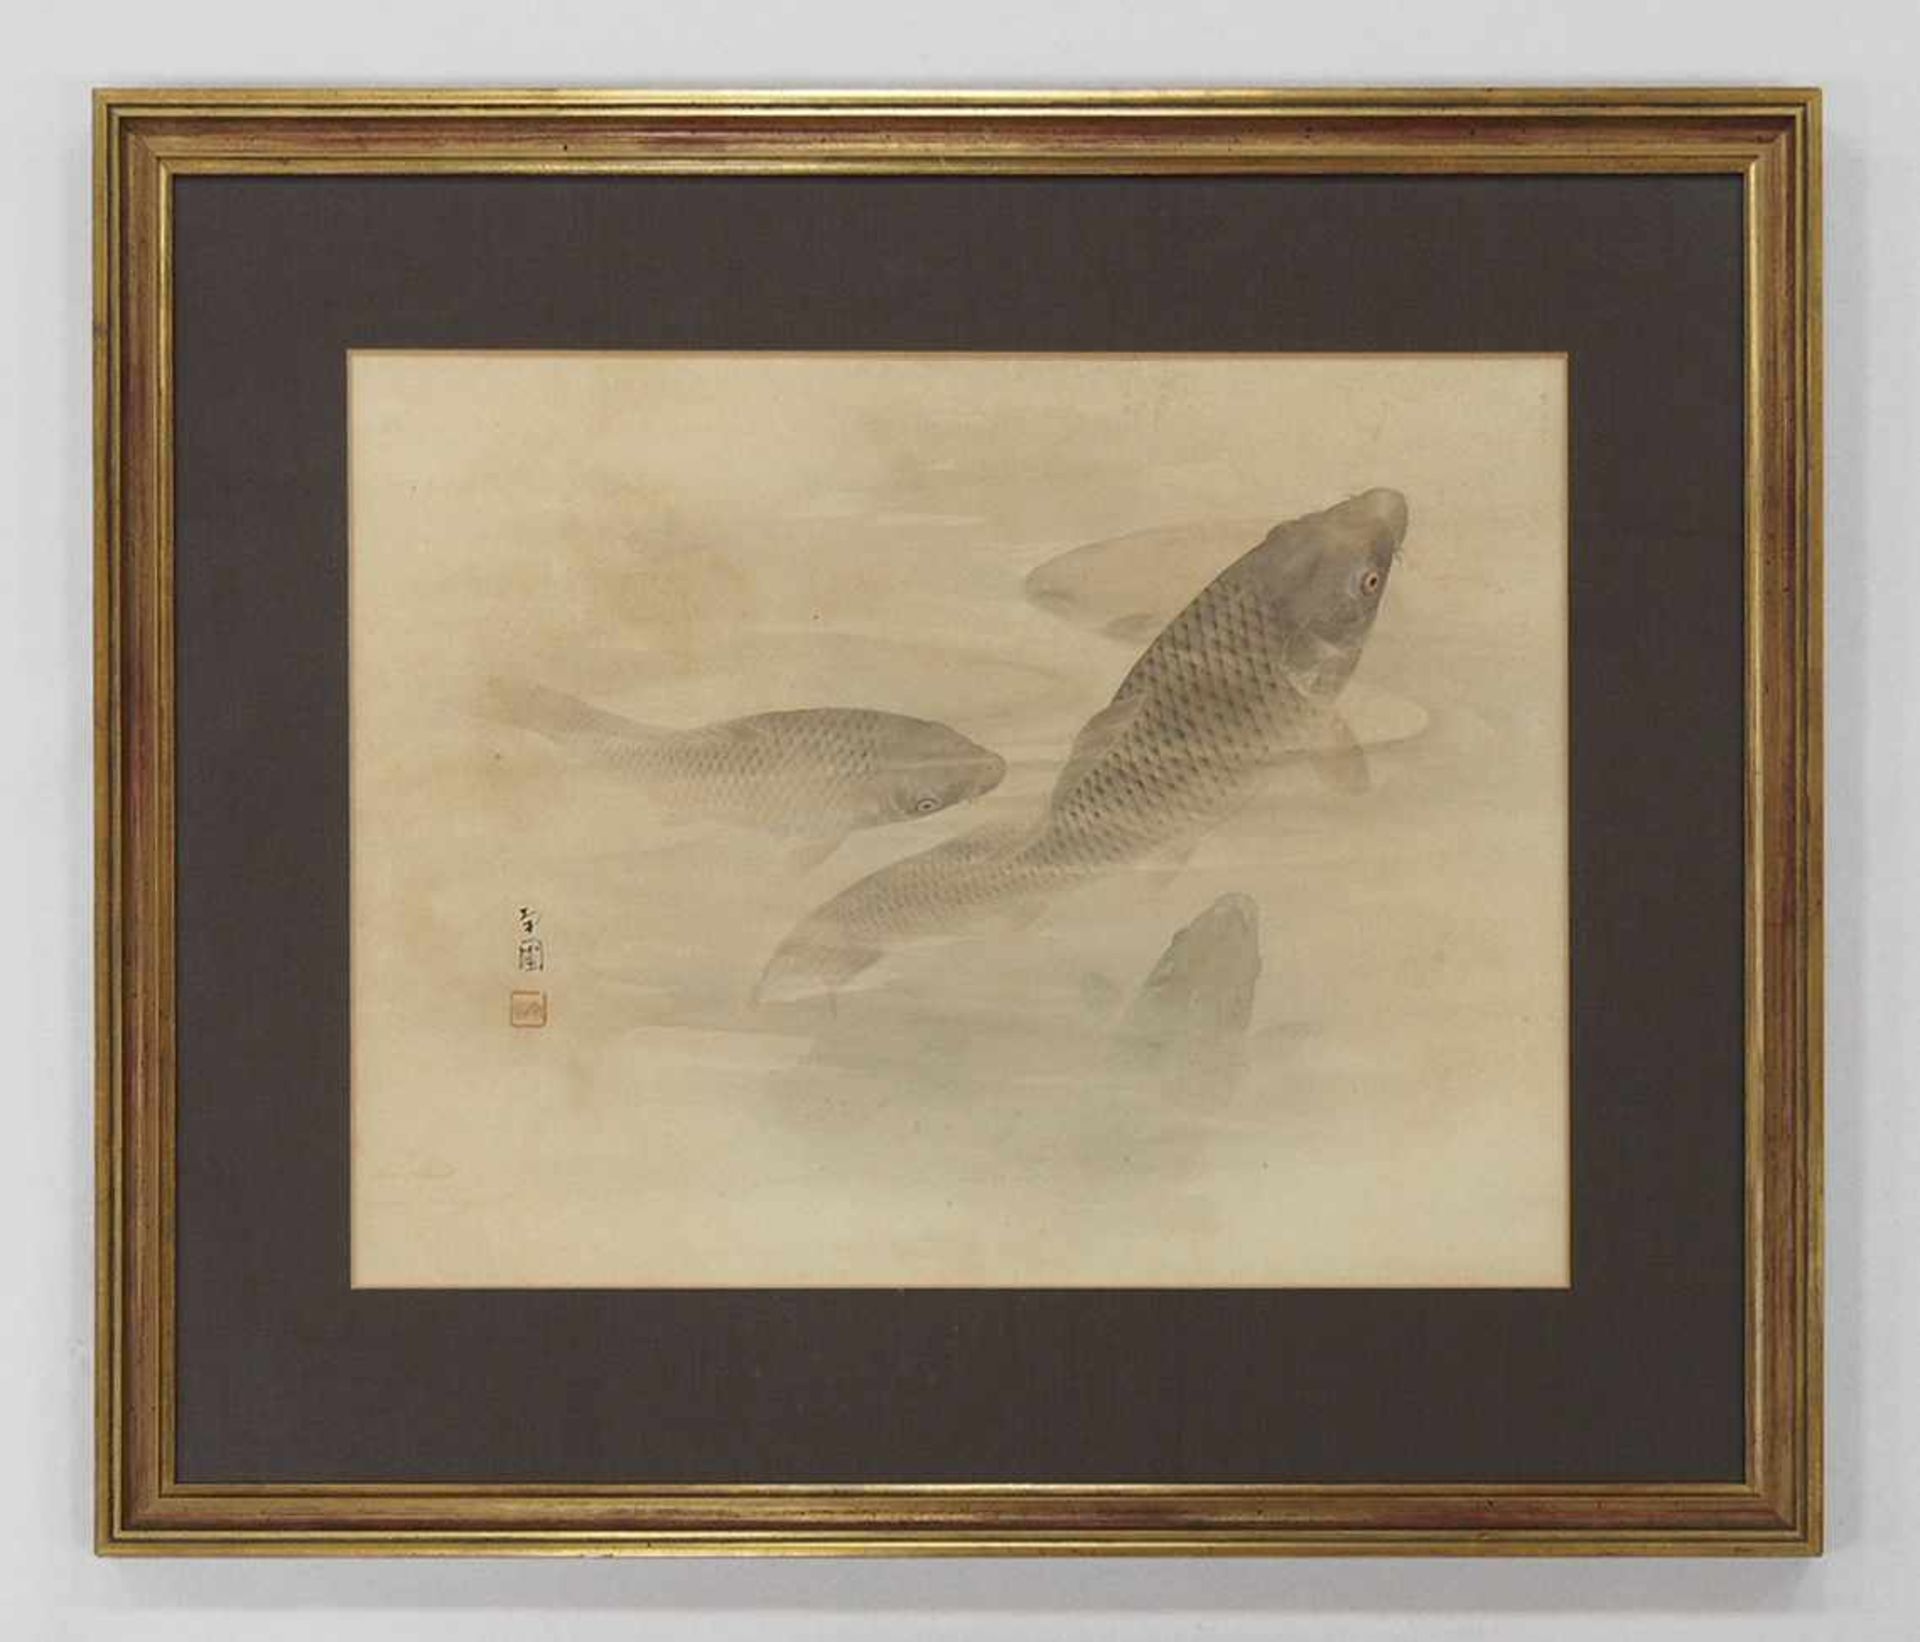 JAPANISCHER MEISTERum 1900Koi-FischeAquarell auf Papier, signiert, rote Stempelmarke, 38 x 50 cm, - Bild 2 aus 3